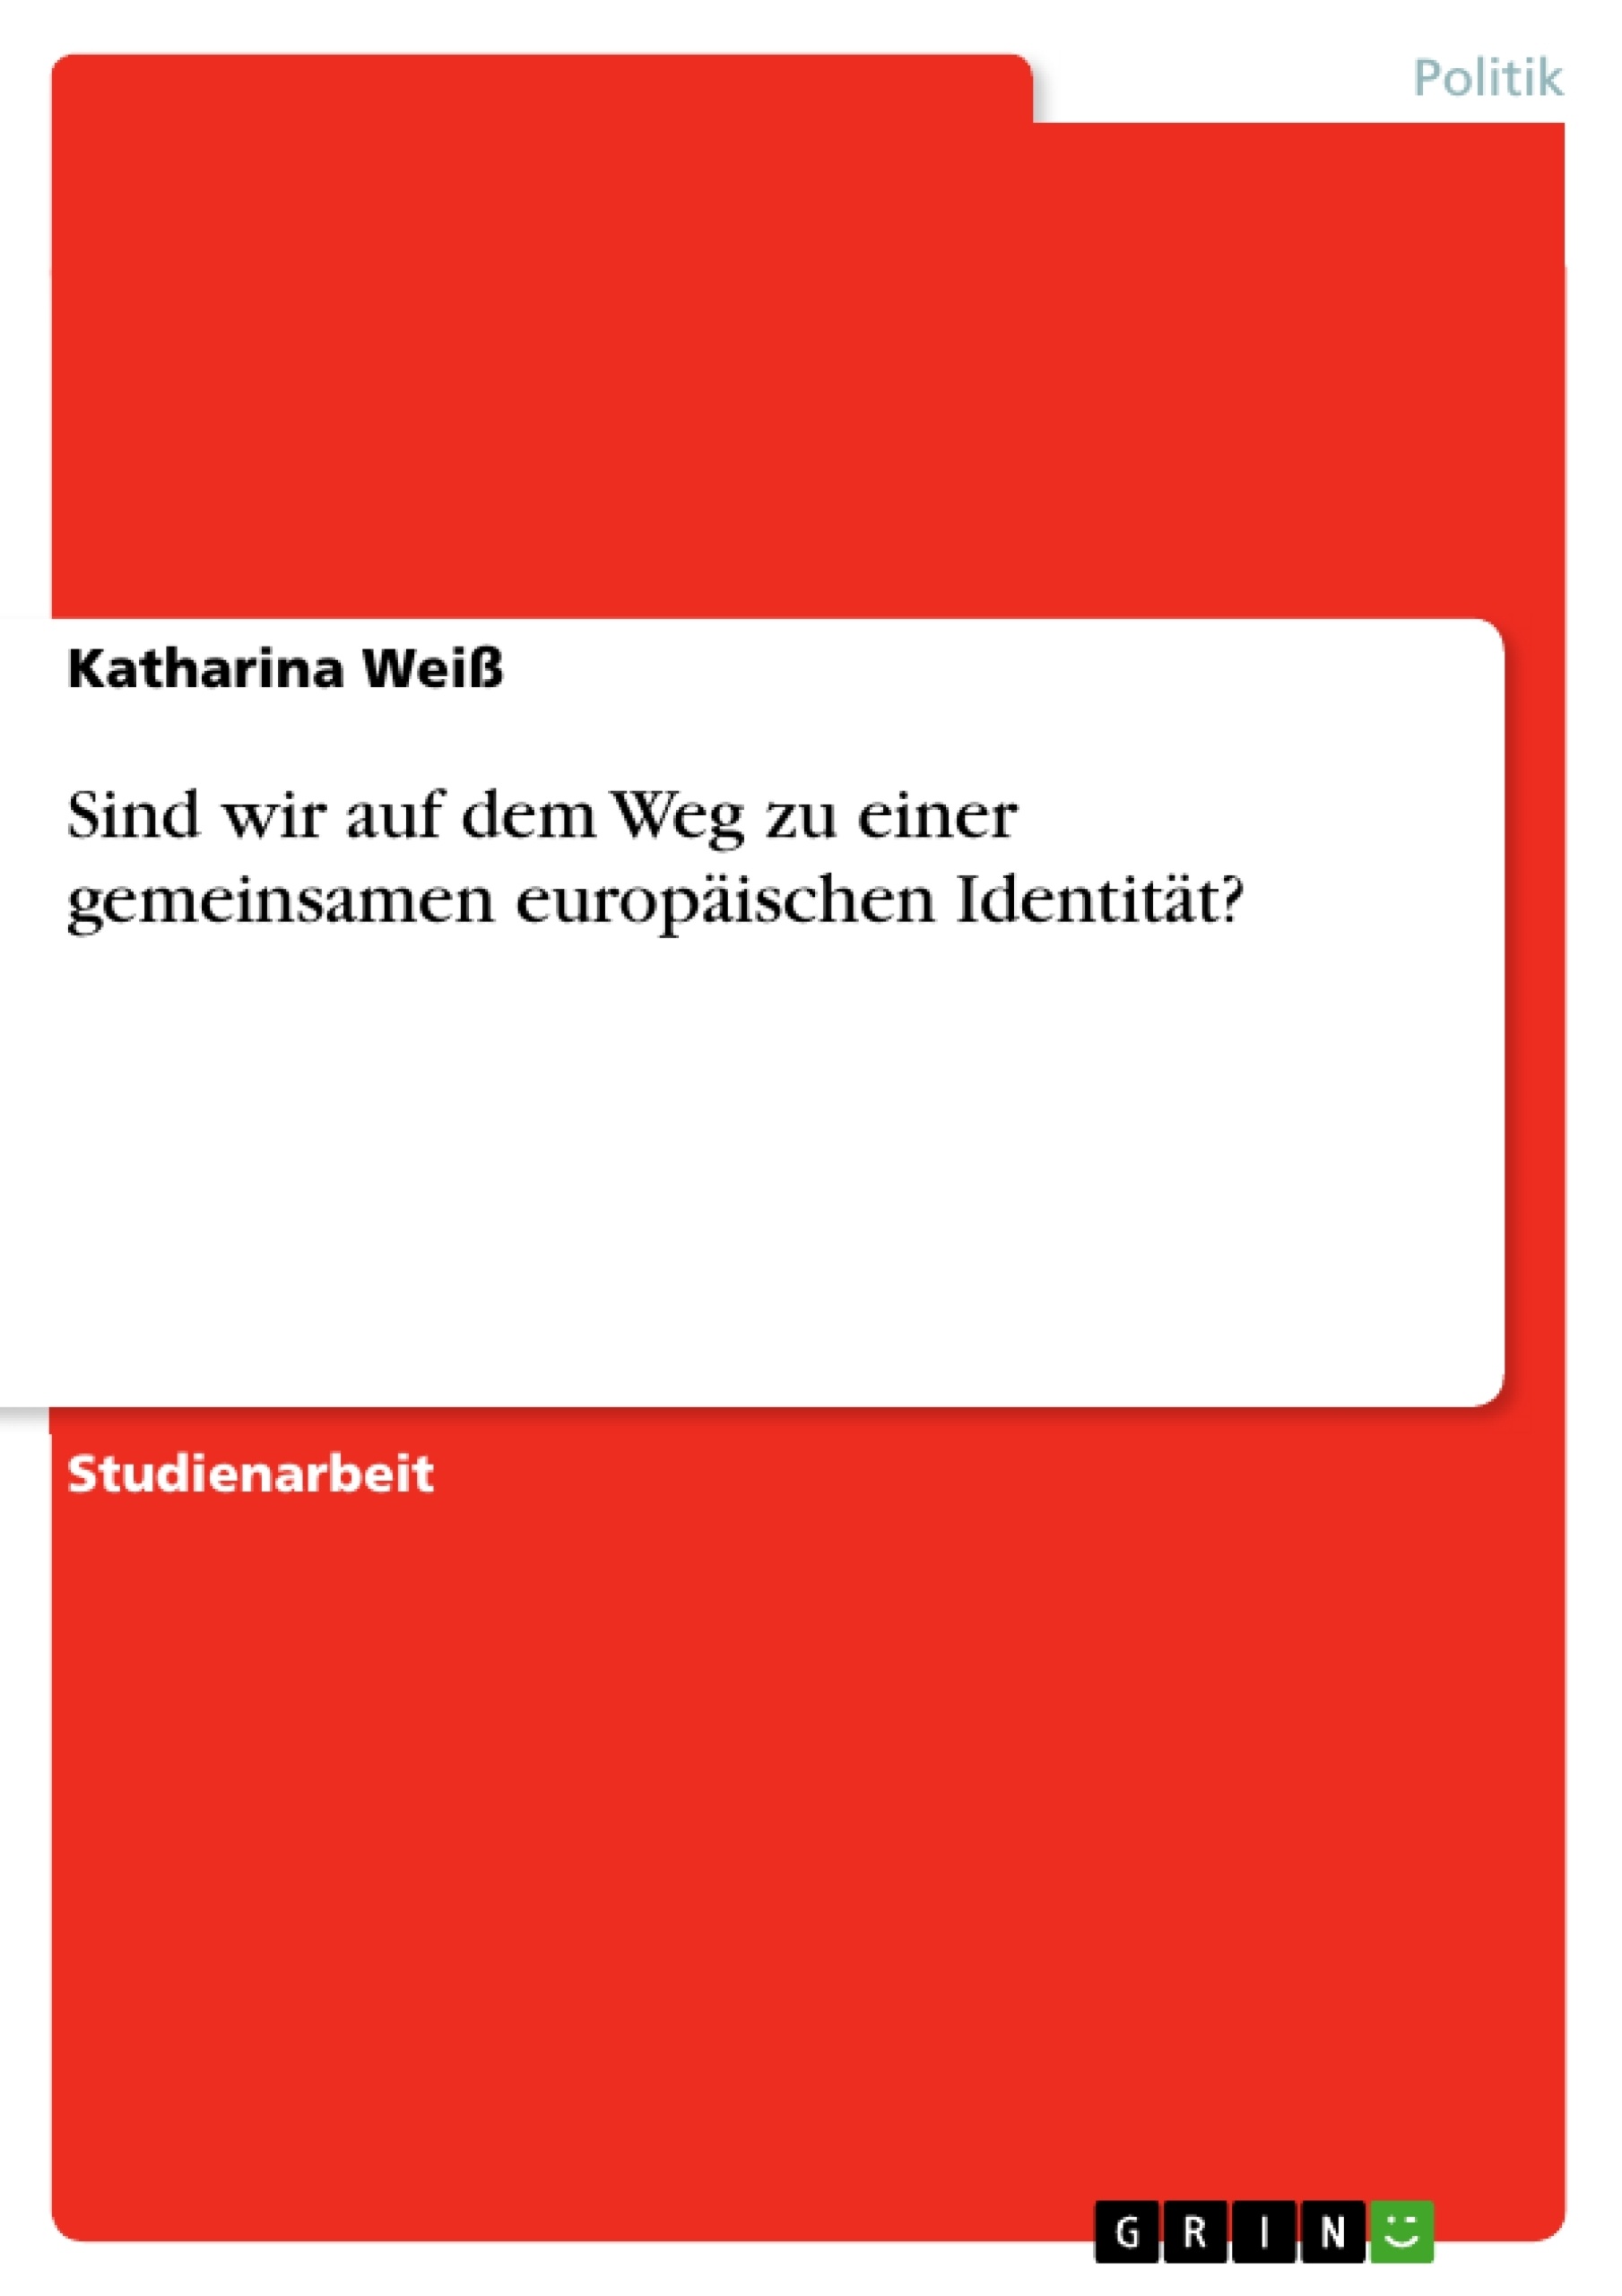 Title: Sind wir auf dem Weg zu einer gemeinsamen europäischen Identität?